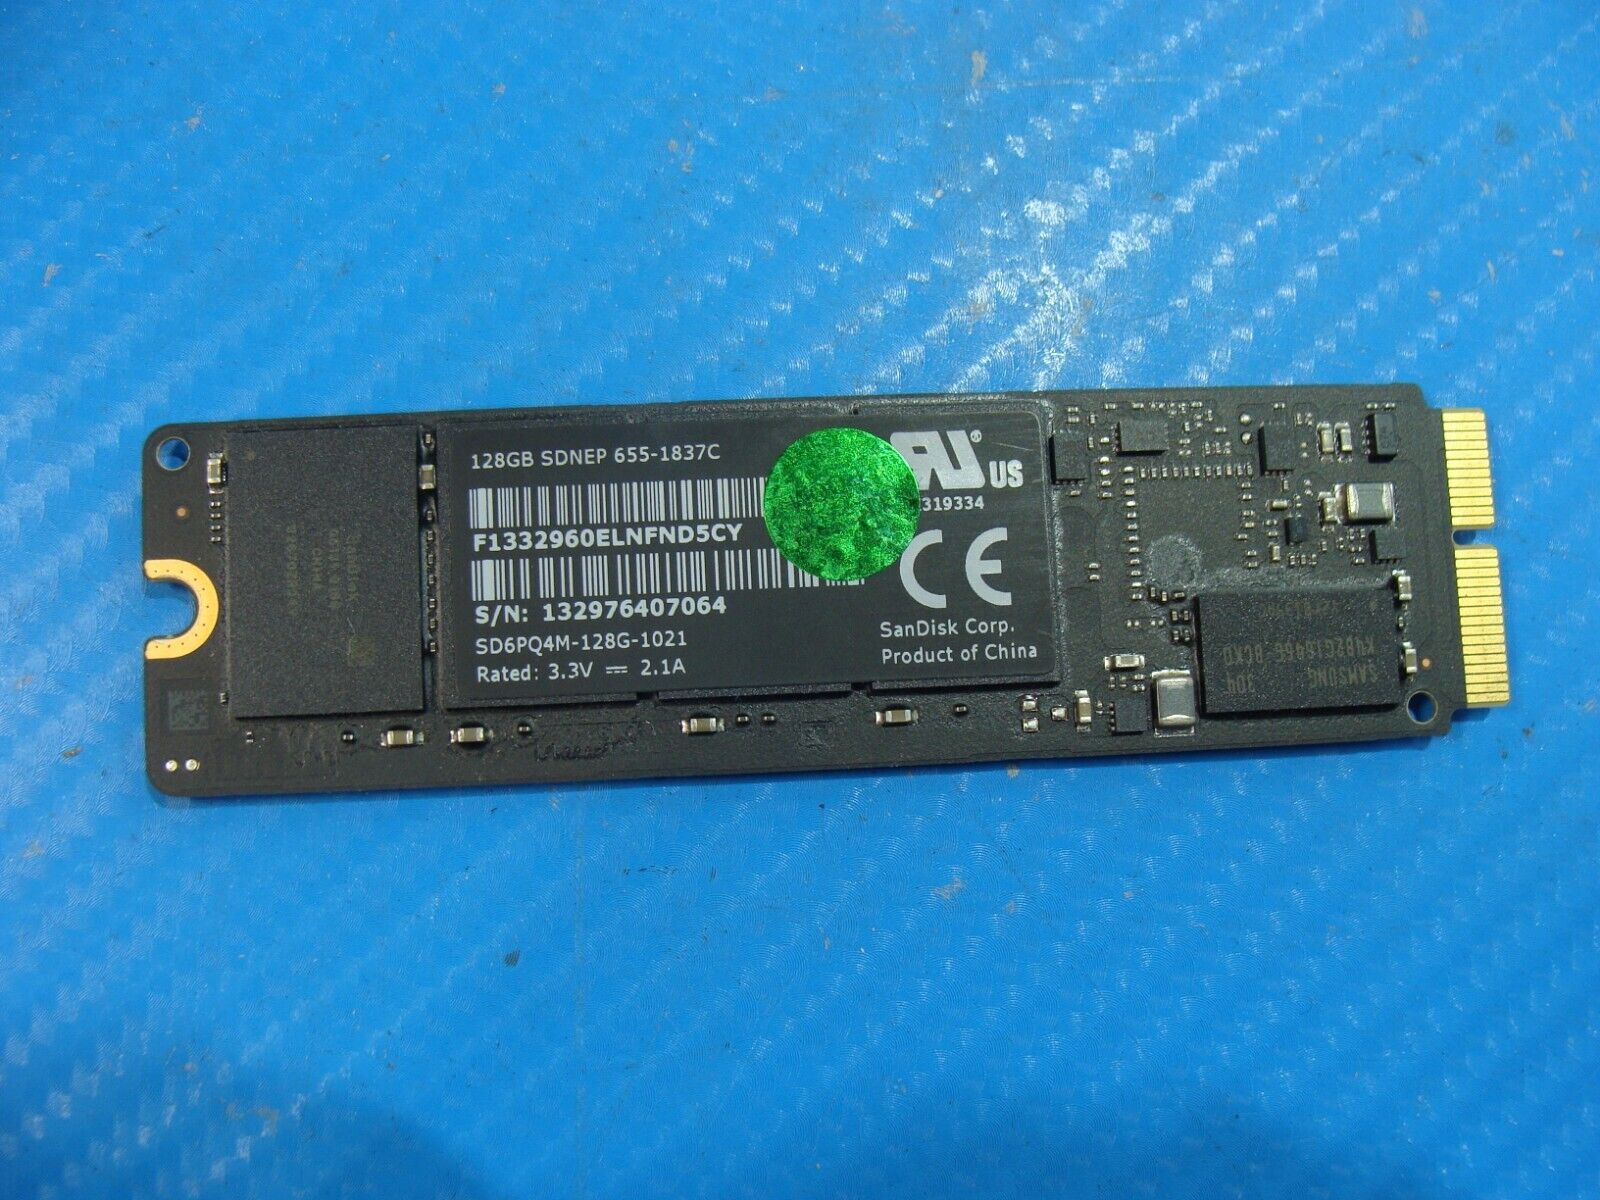 MacBook A1466 MD760LL/A SanDisk 128GB 12+16 pin SSD SD6PQ4M-128G-1021 655-1837C